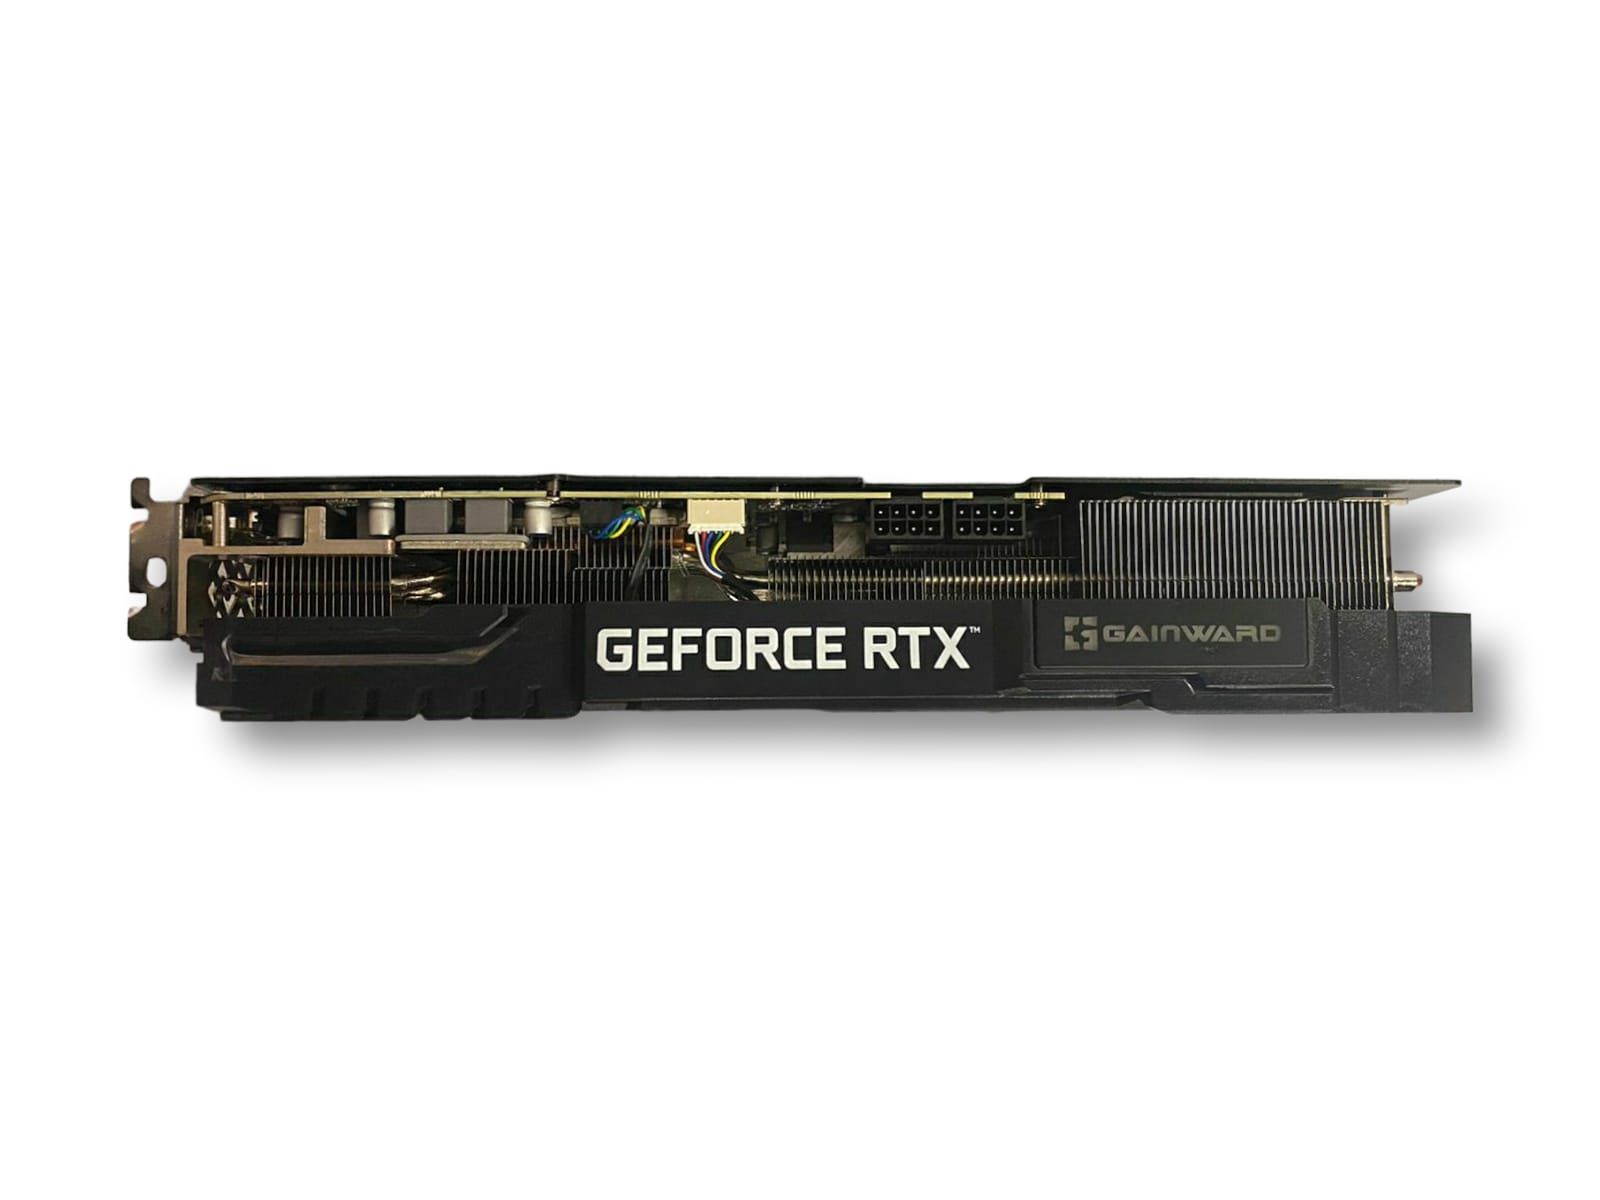 Msi geforce rtx 3070 ti. Gainward 3070 ti. GEFORCE RTX 3070.